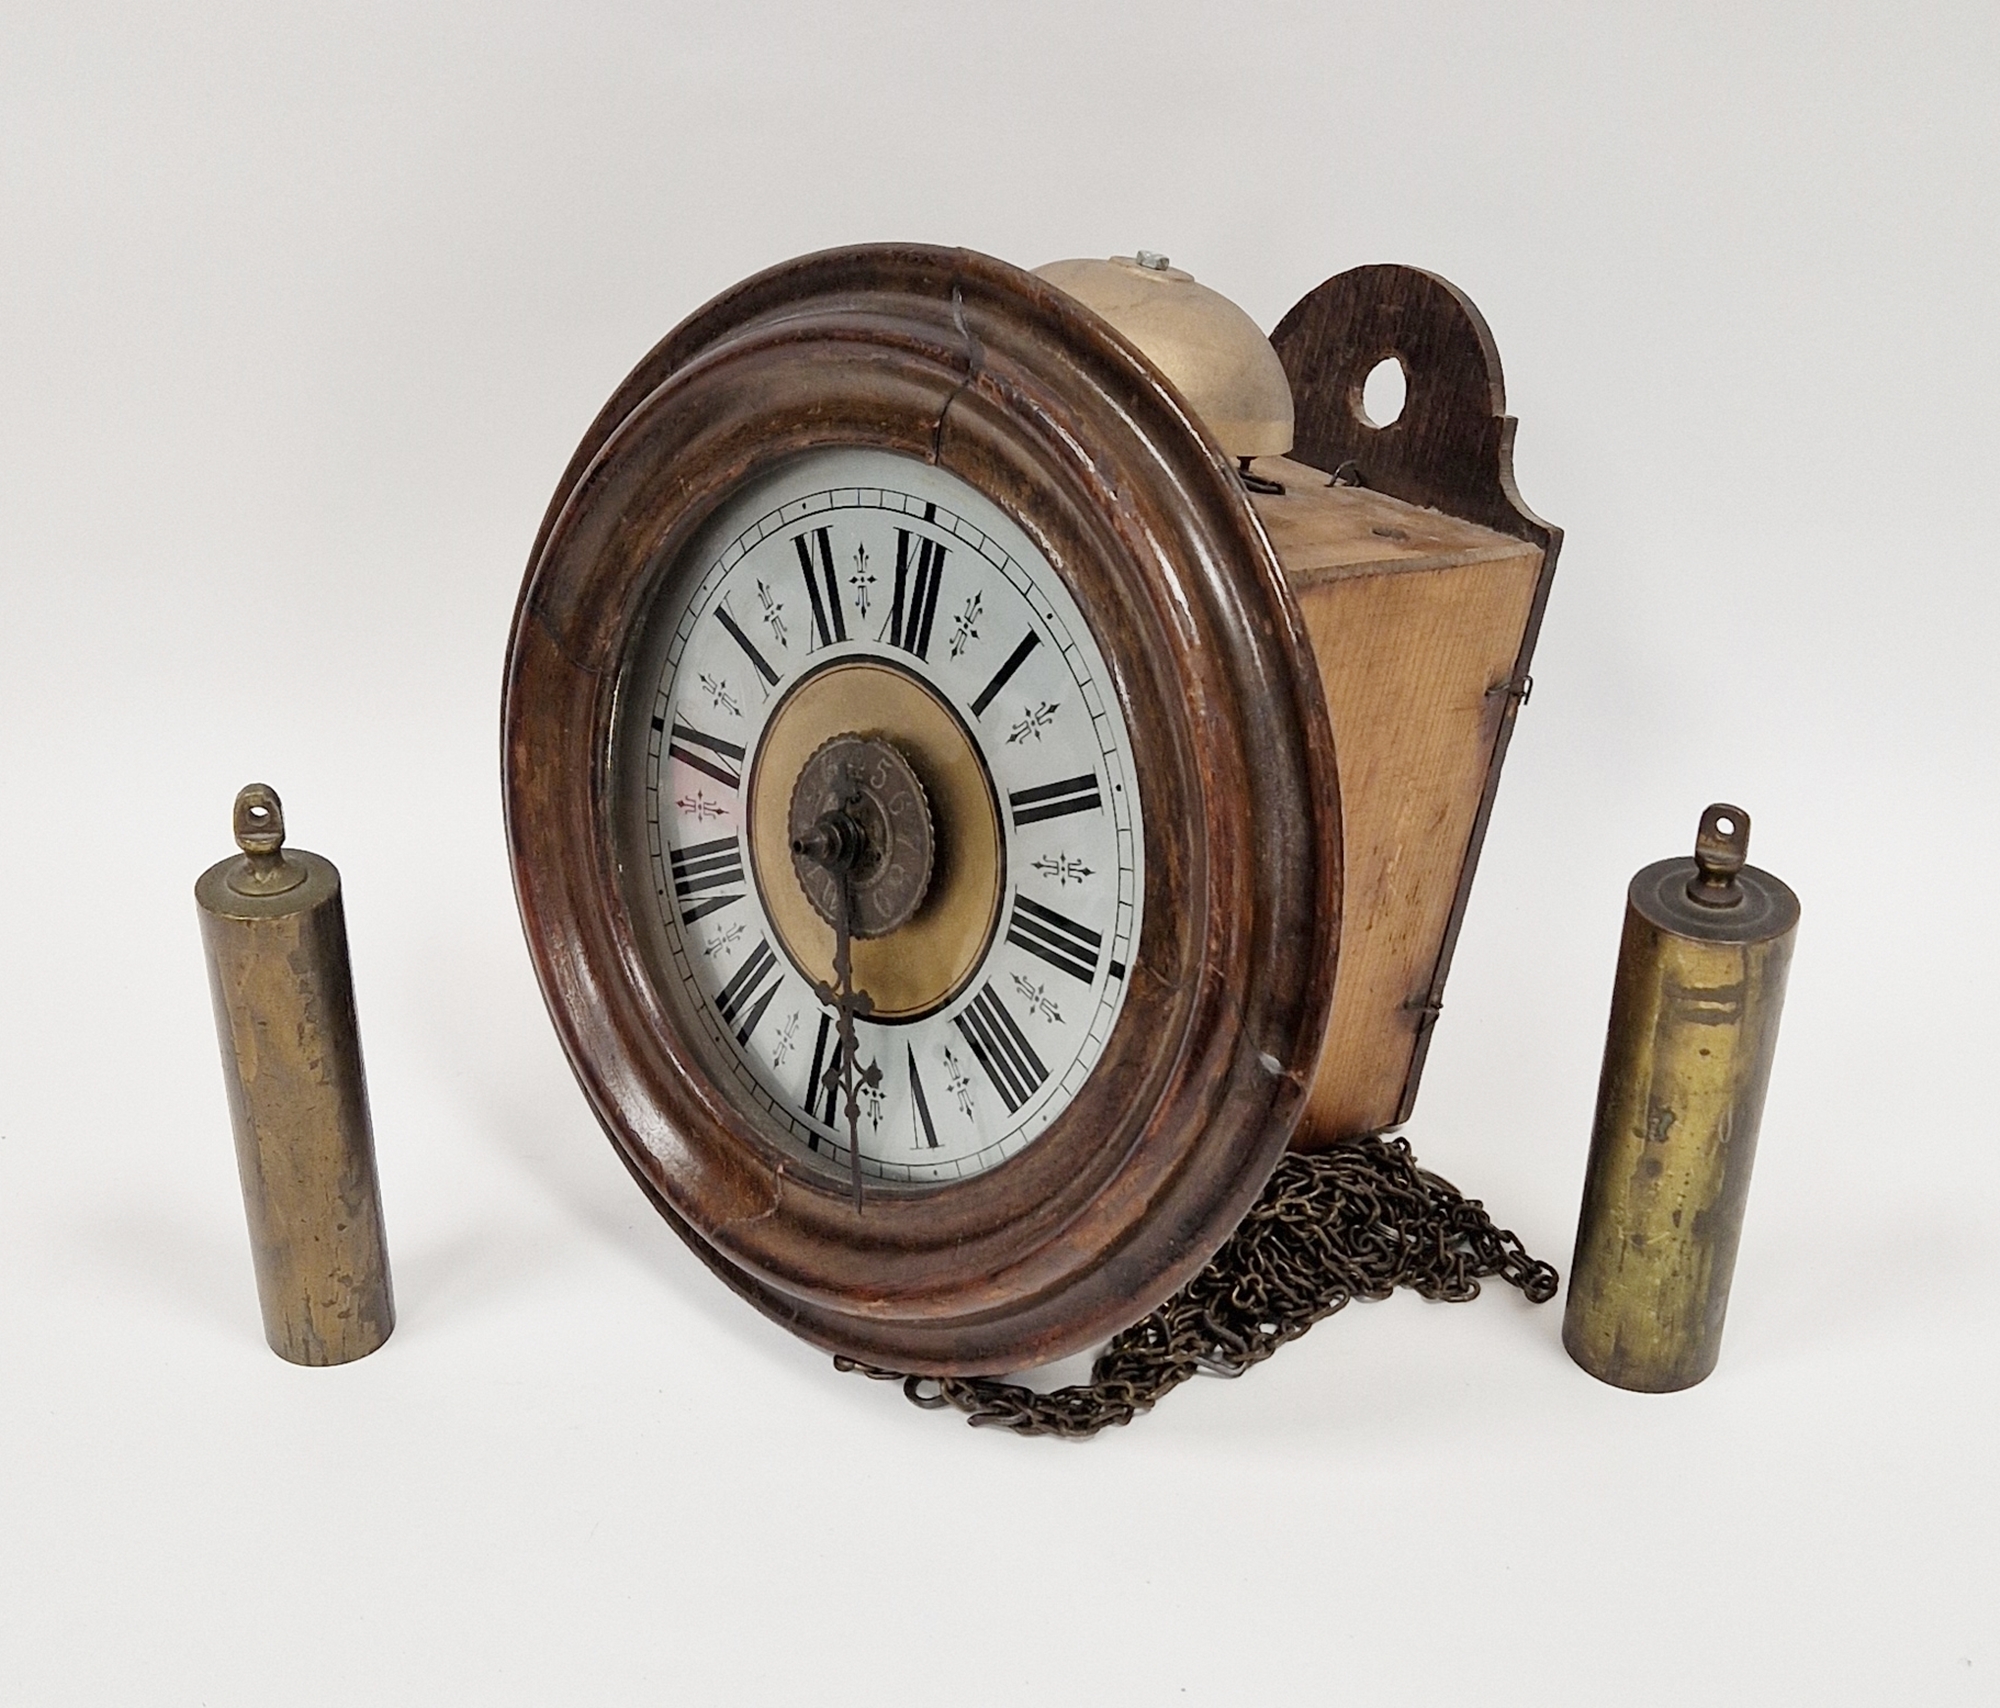 Mahogany cased postmans alarm clock with Roman numerals, inner Arabic numeral dial, 27cm diameter